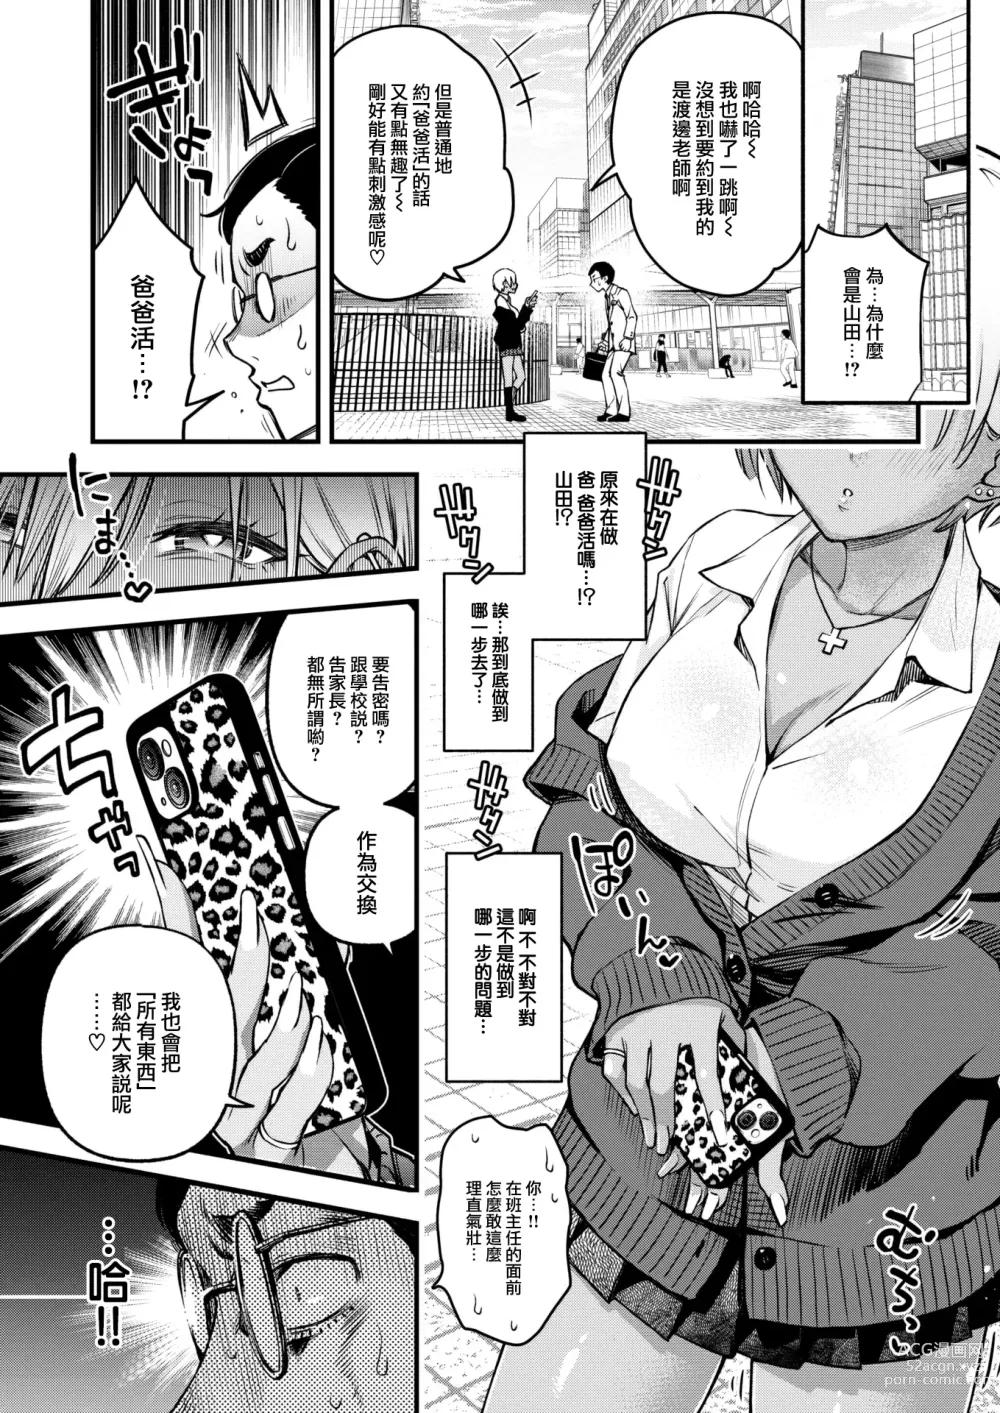 Page 8 of manga Sensei Matching